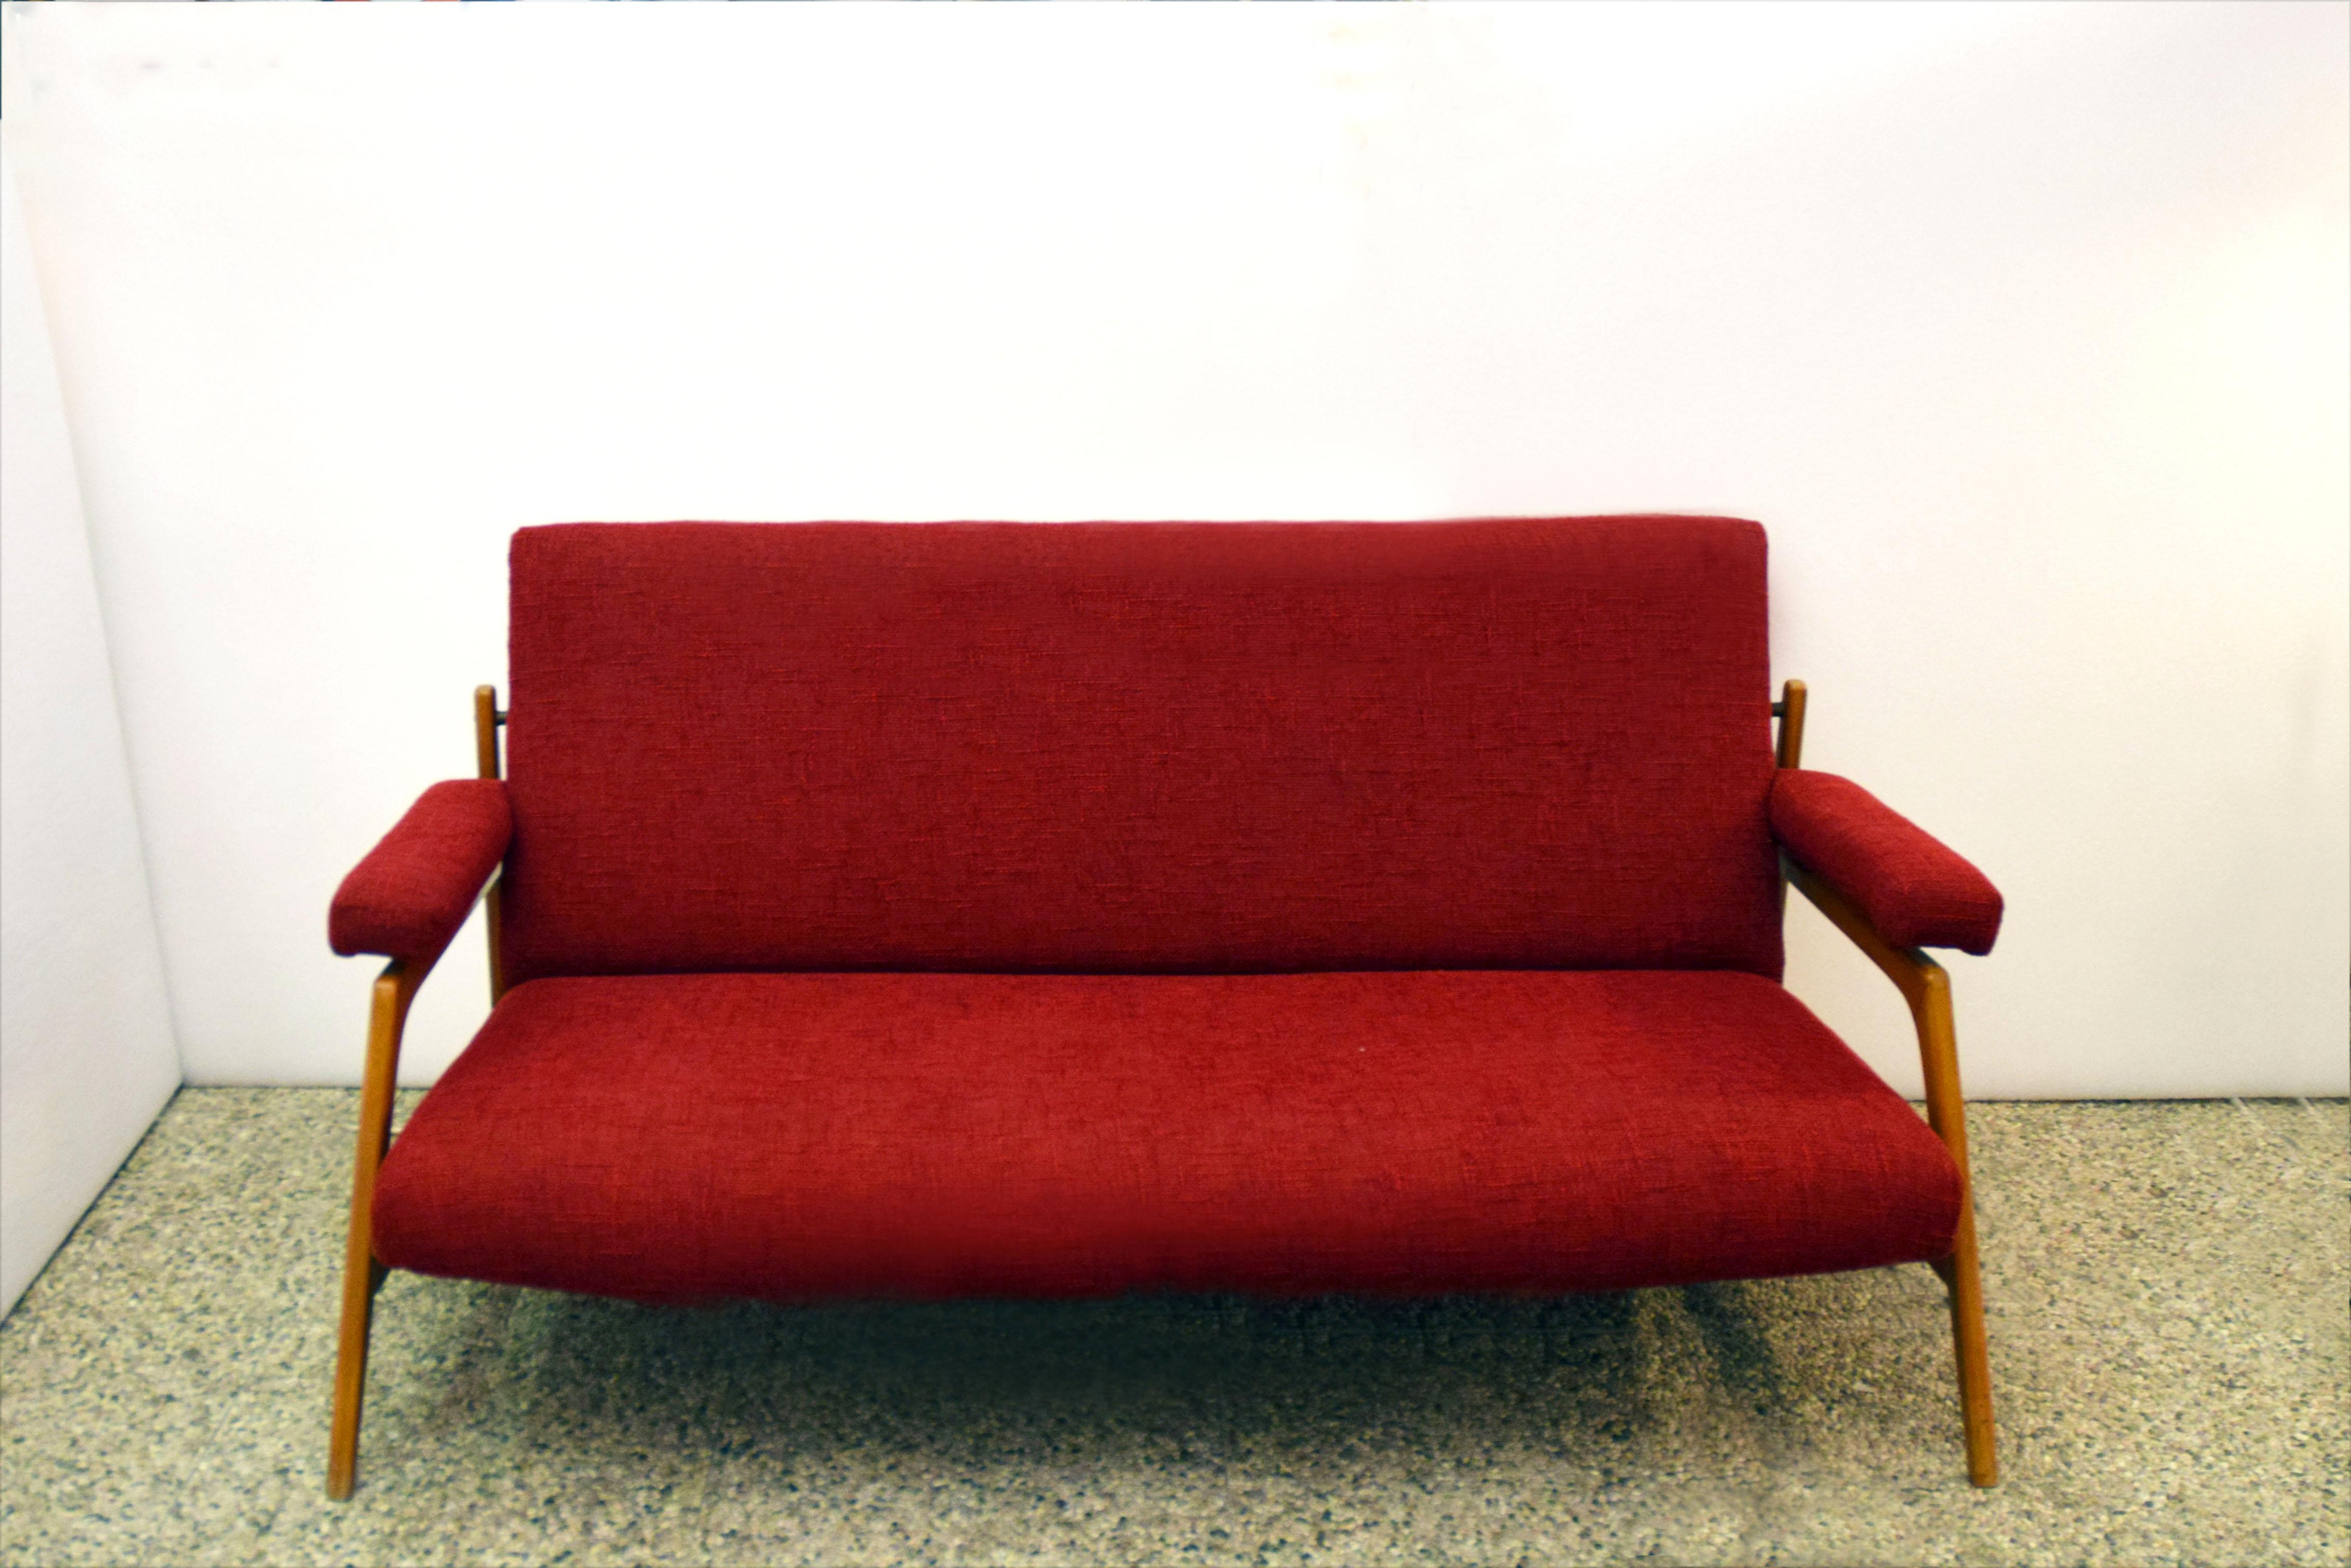 Salon complet avec une paire de fauteuils et un canapé trois places, production scandinave des années 1960.
Structure en bois d'érable avec assise, dossier et accoudoirs en tissu, détails et articulations en laiton.
En parfait état.
Dimensions :